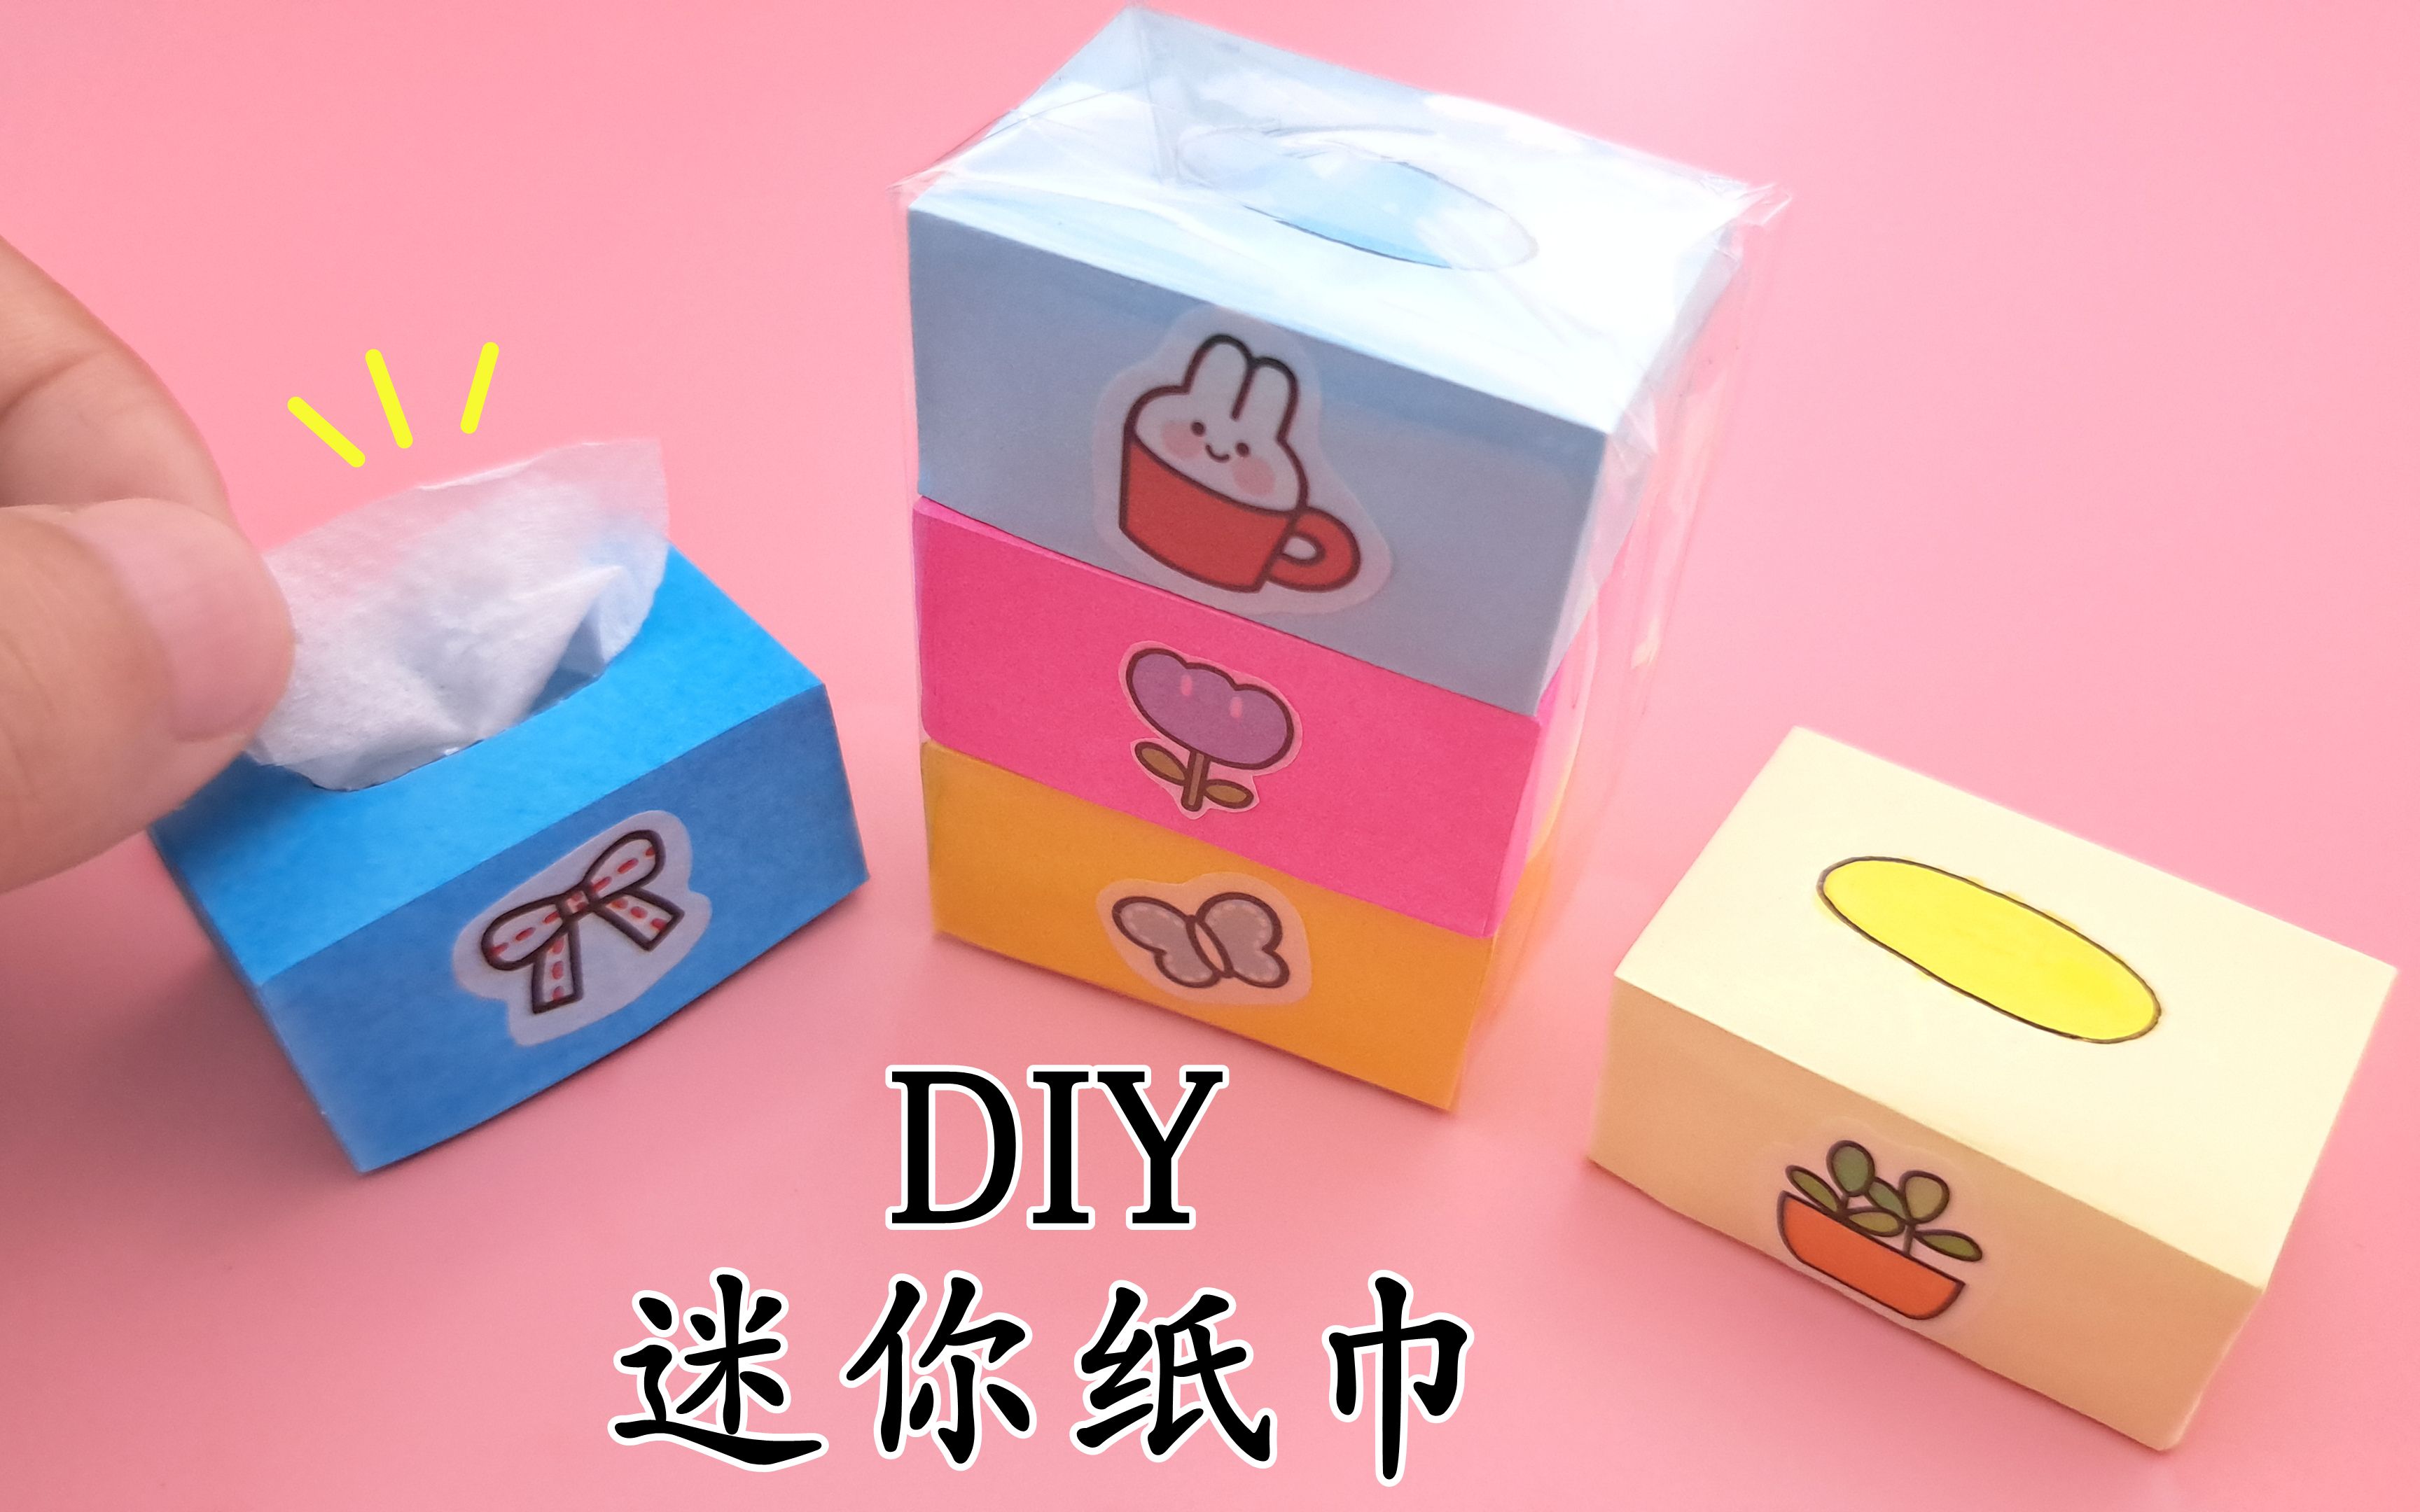 教你折可爱的迷你纸巾盒,简单有创意,手工diy折纸教学